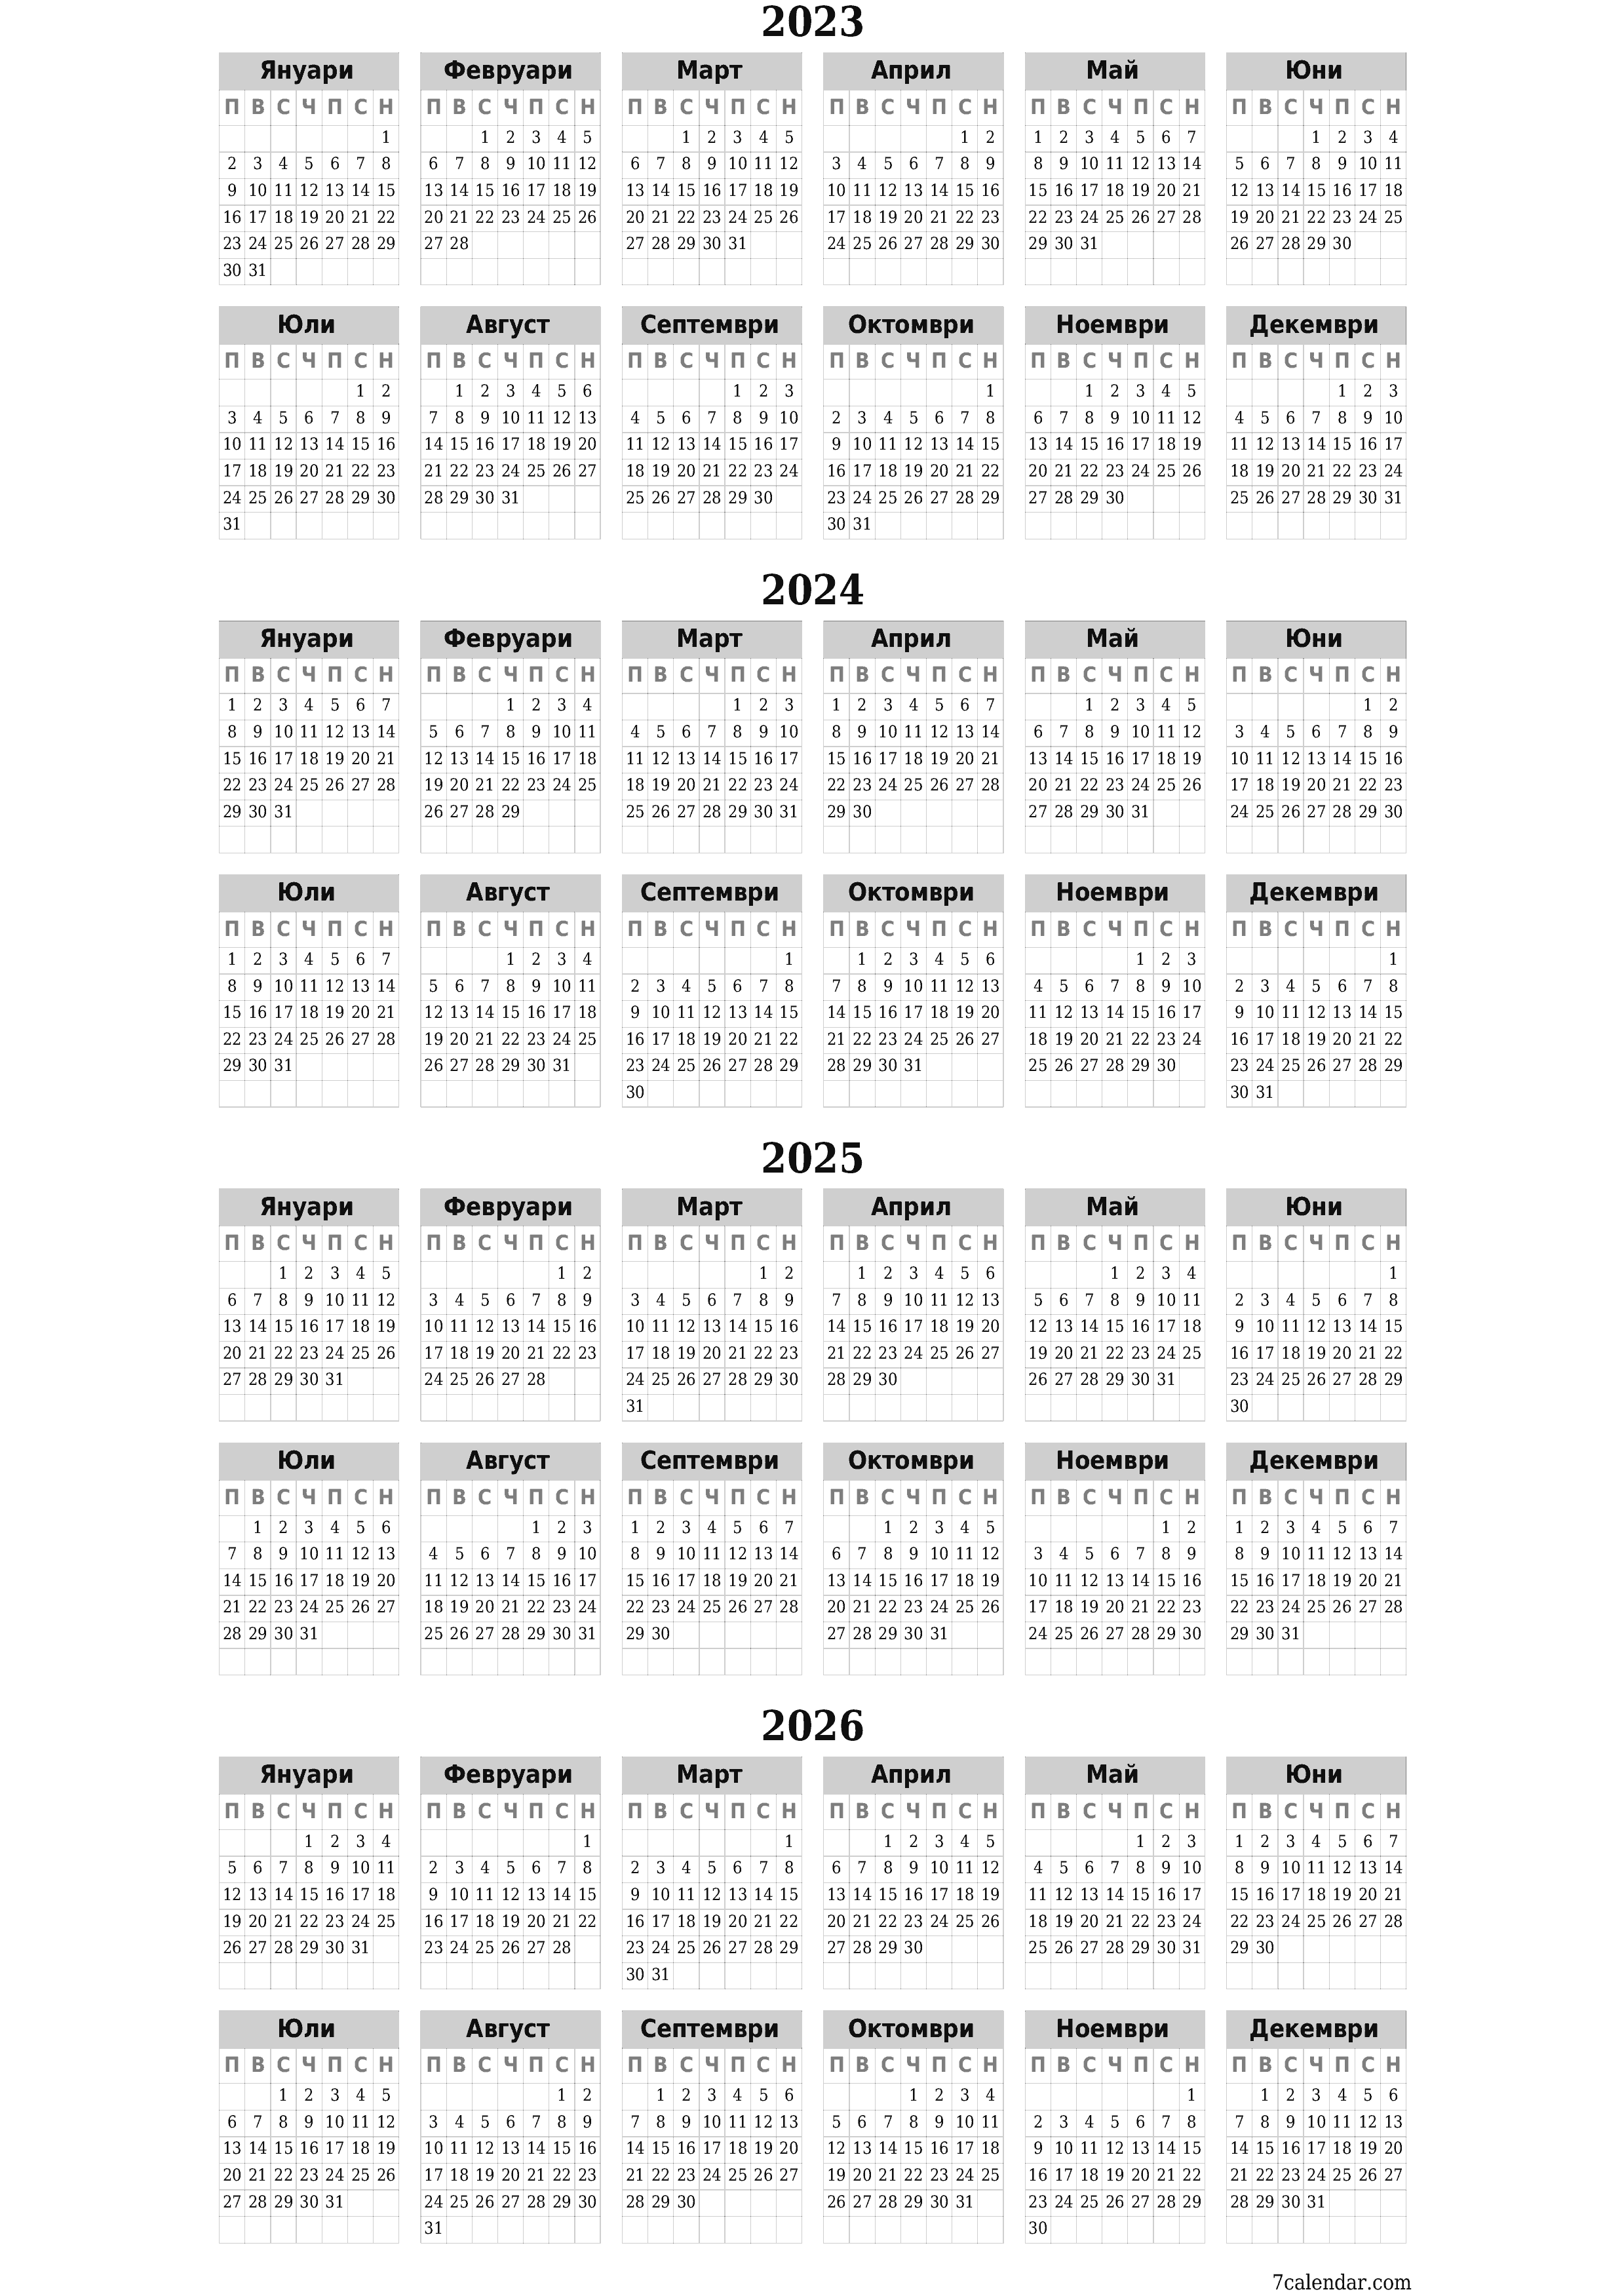  за печат стенен шаблон за безплатен вертикална годишни календар Март (Мар) 2023